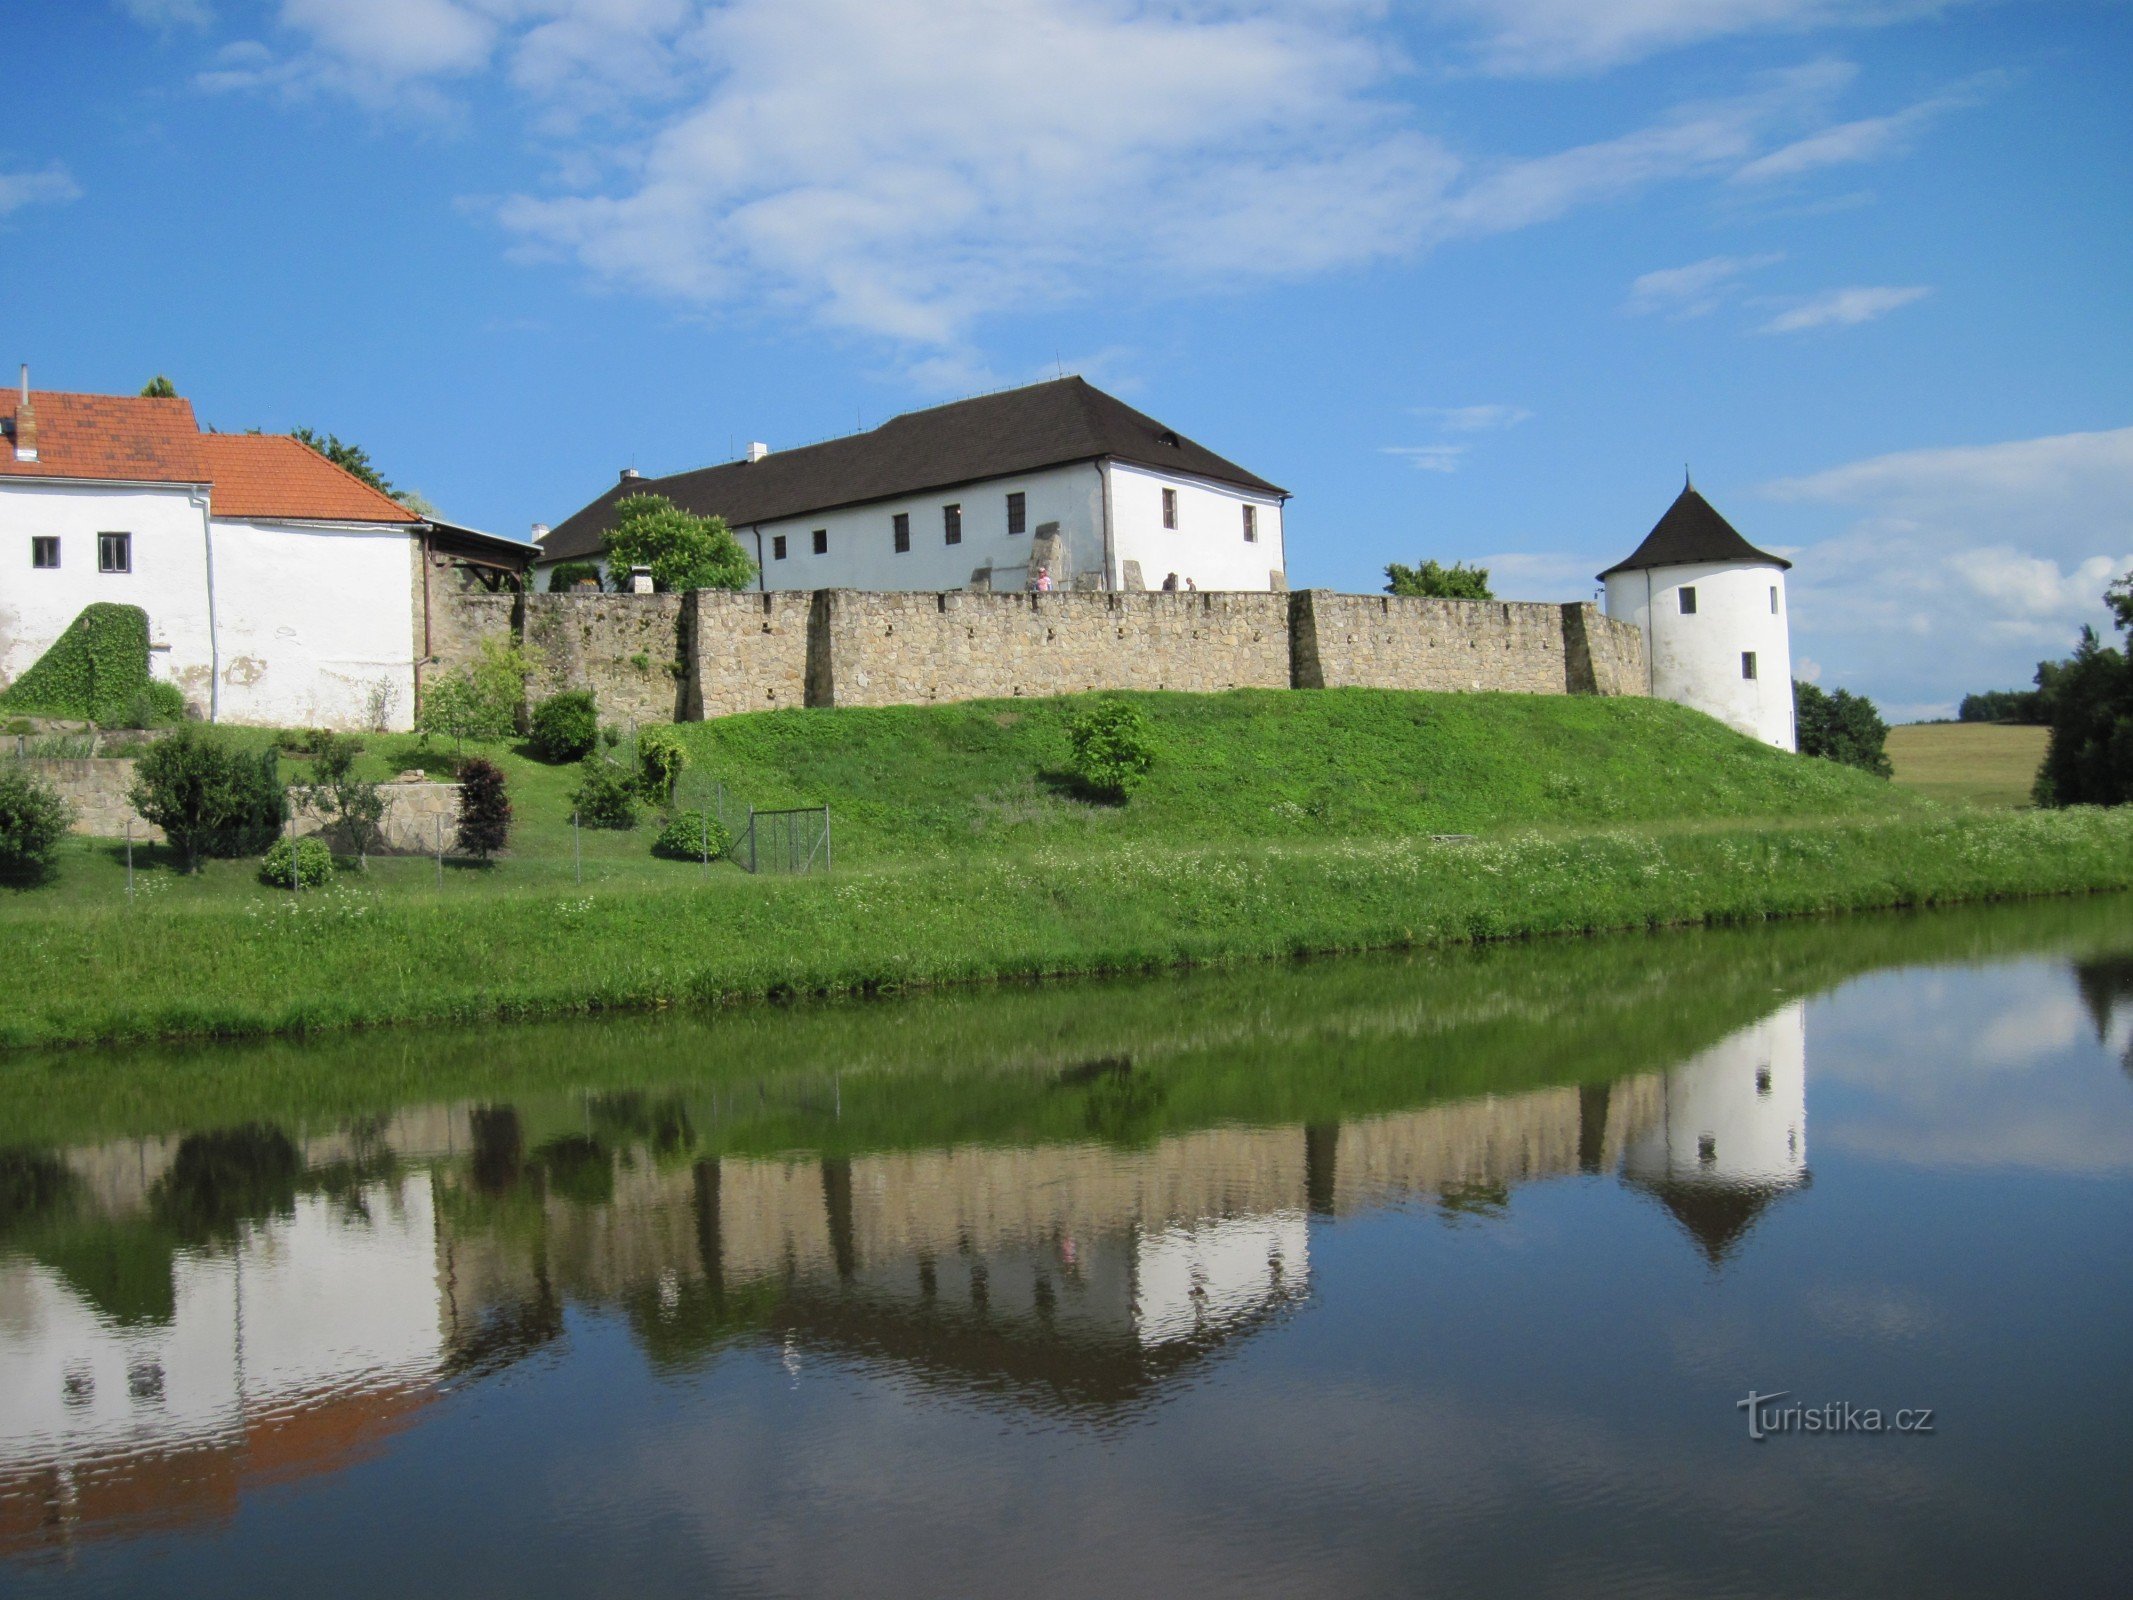 Žumberk, en av destinationerna på rutten